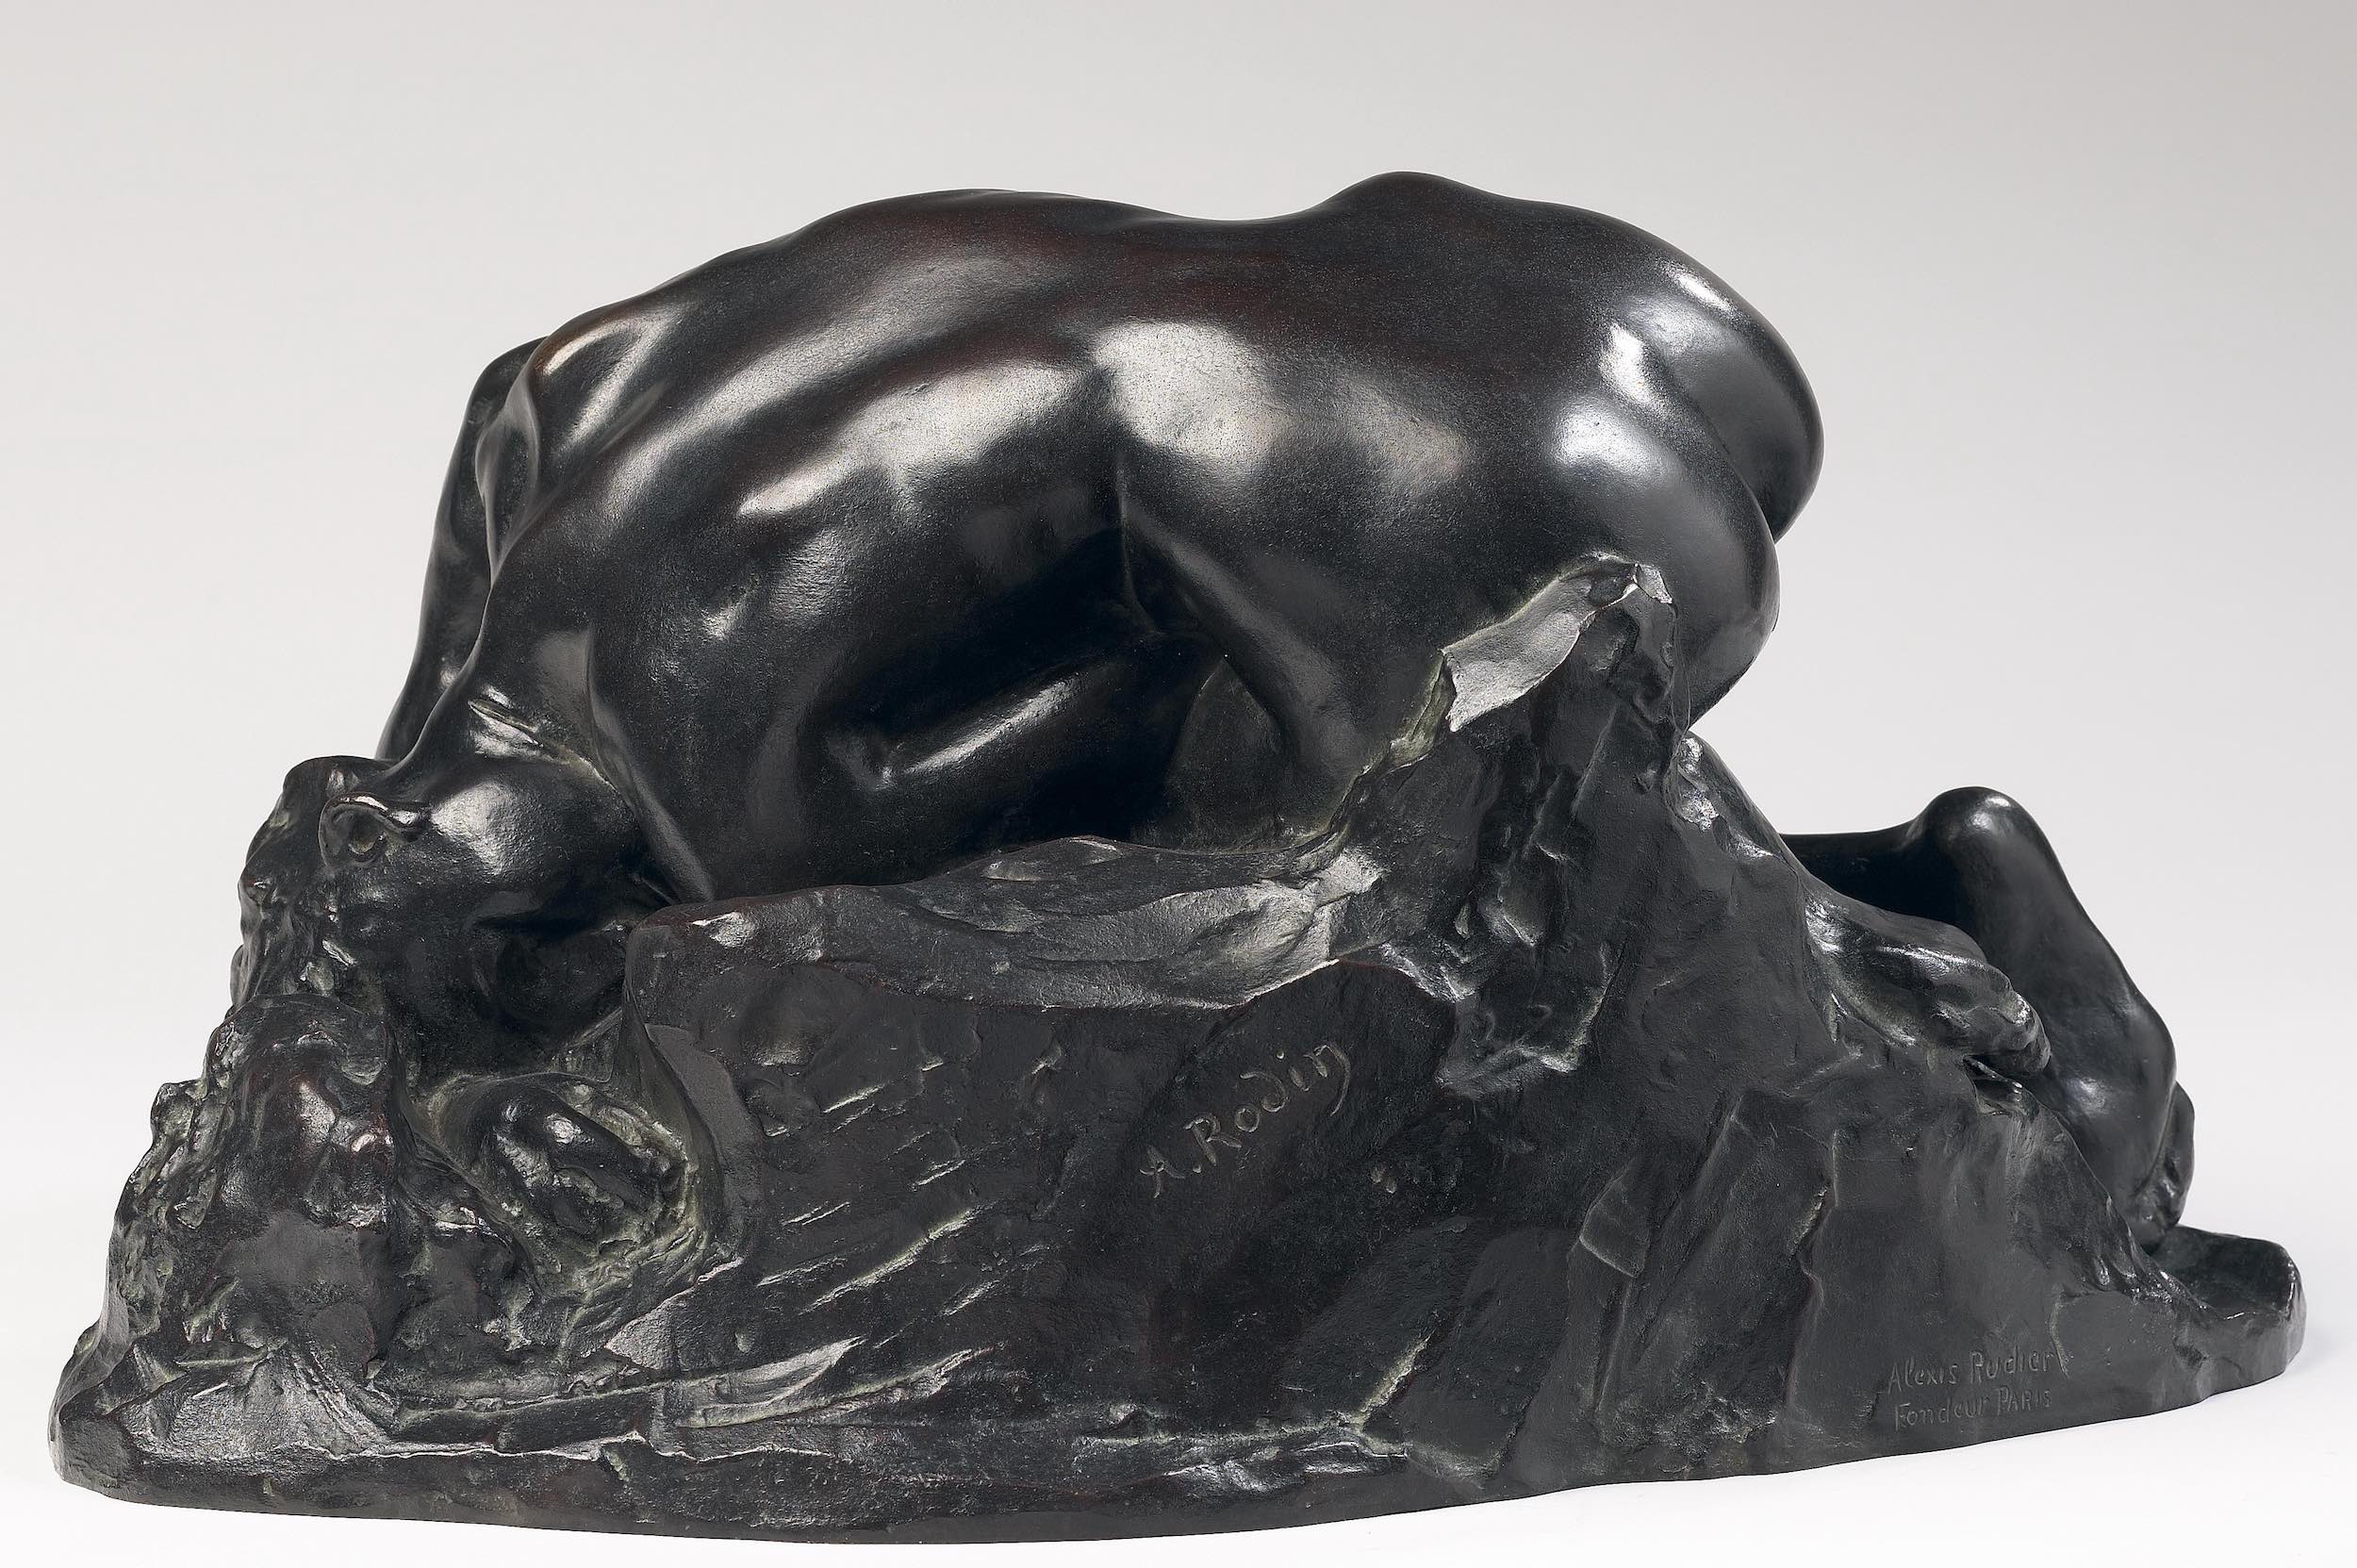 Danaïd by Auguste Rodin - 1889 National Museum in Krakow